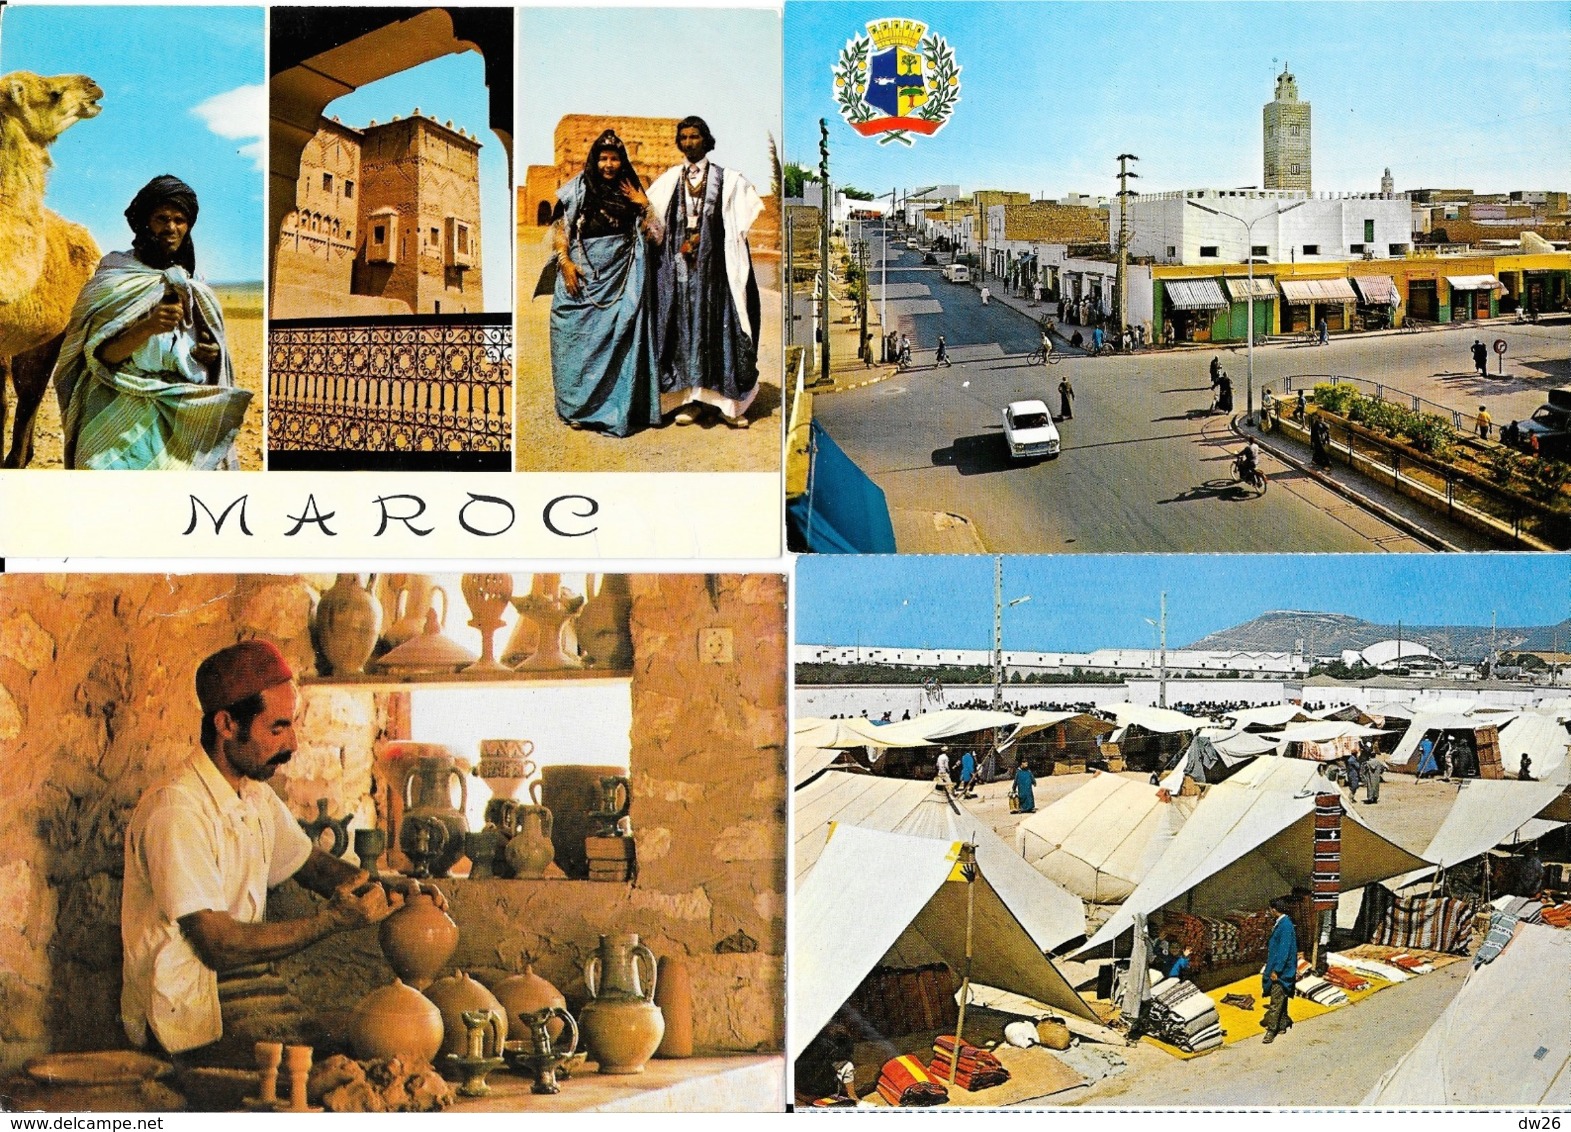 Lot n° 98 de 106 CPSM et CPM du Maroc - Villes, villages, Ksar, Atlas, garde royale, Fantasia, petites animations